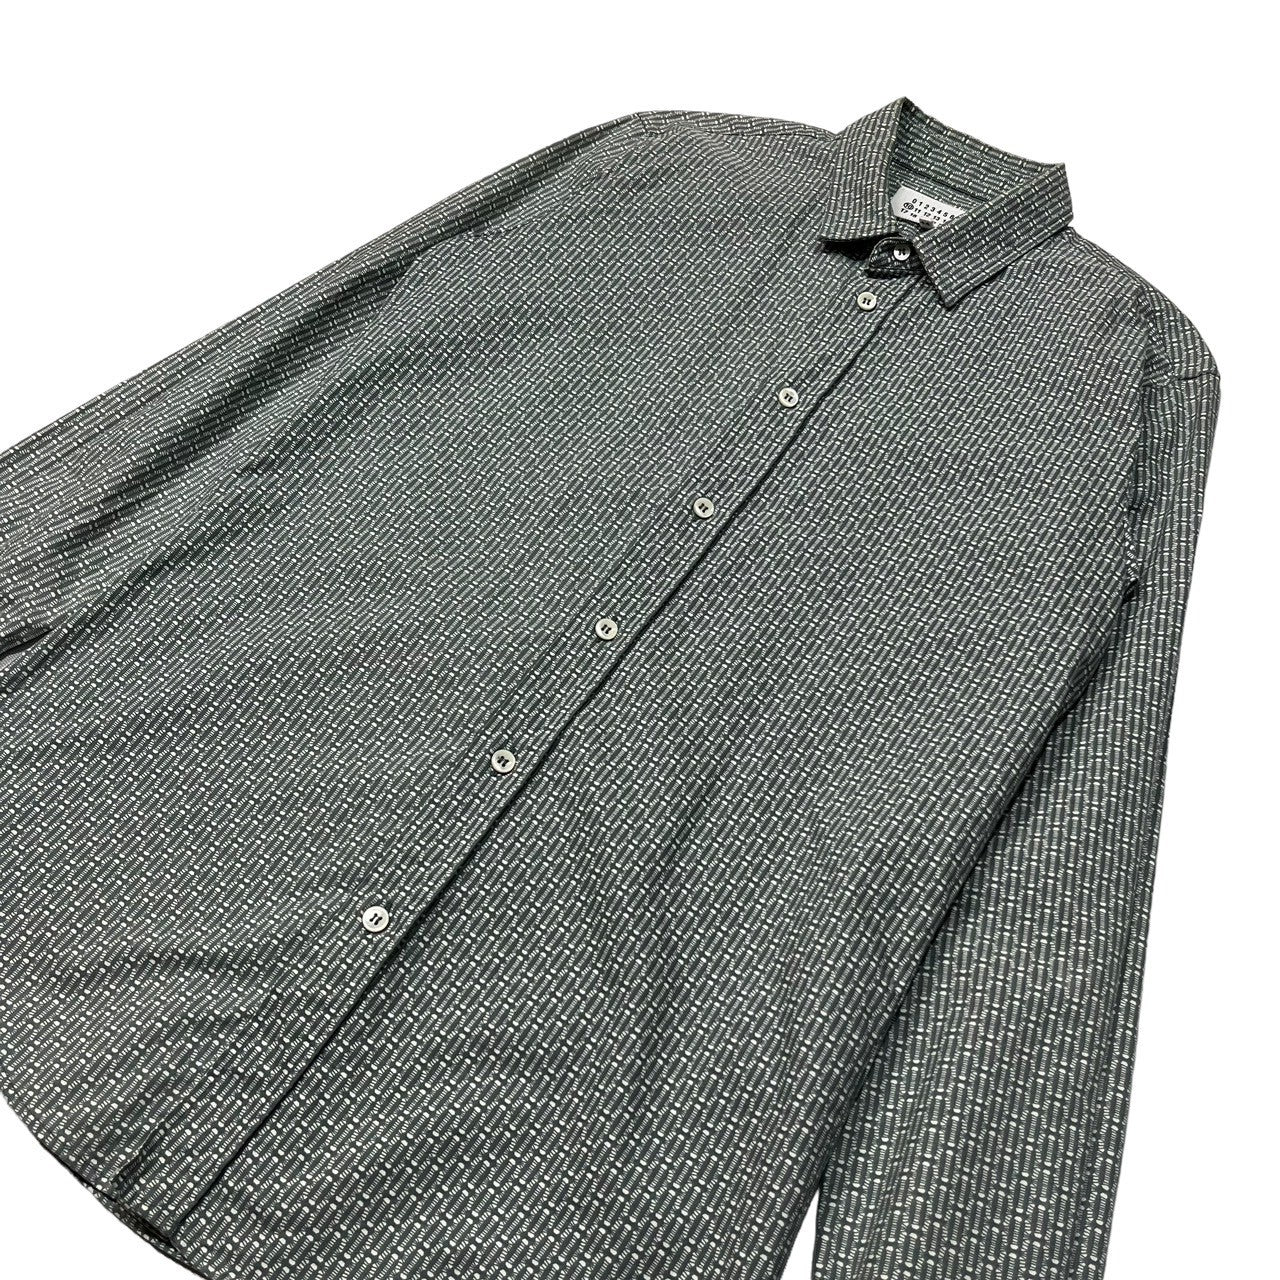 Maison Martin Margiela(メゾン マルタンマルジェラ) 13AW All-over pattern regular collar shirt 総柄 レギュラーカラー シャツ S30DL0244 44(S程度) グリーン×ホワイト